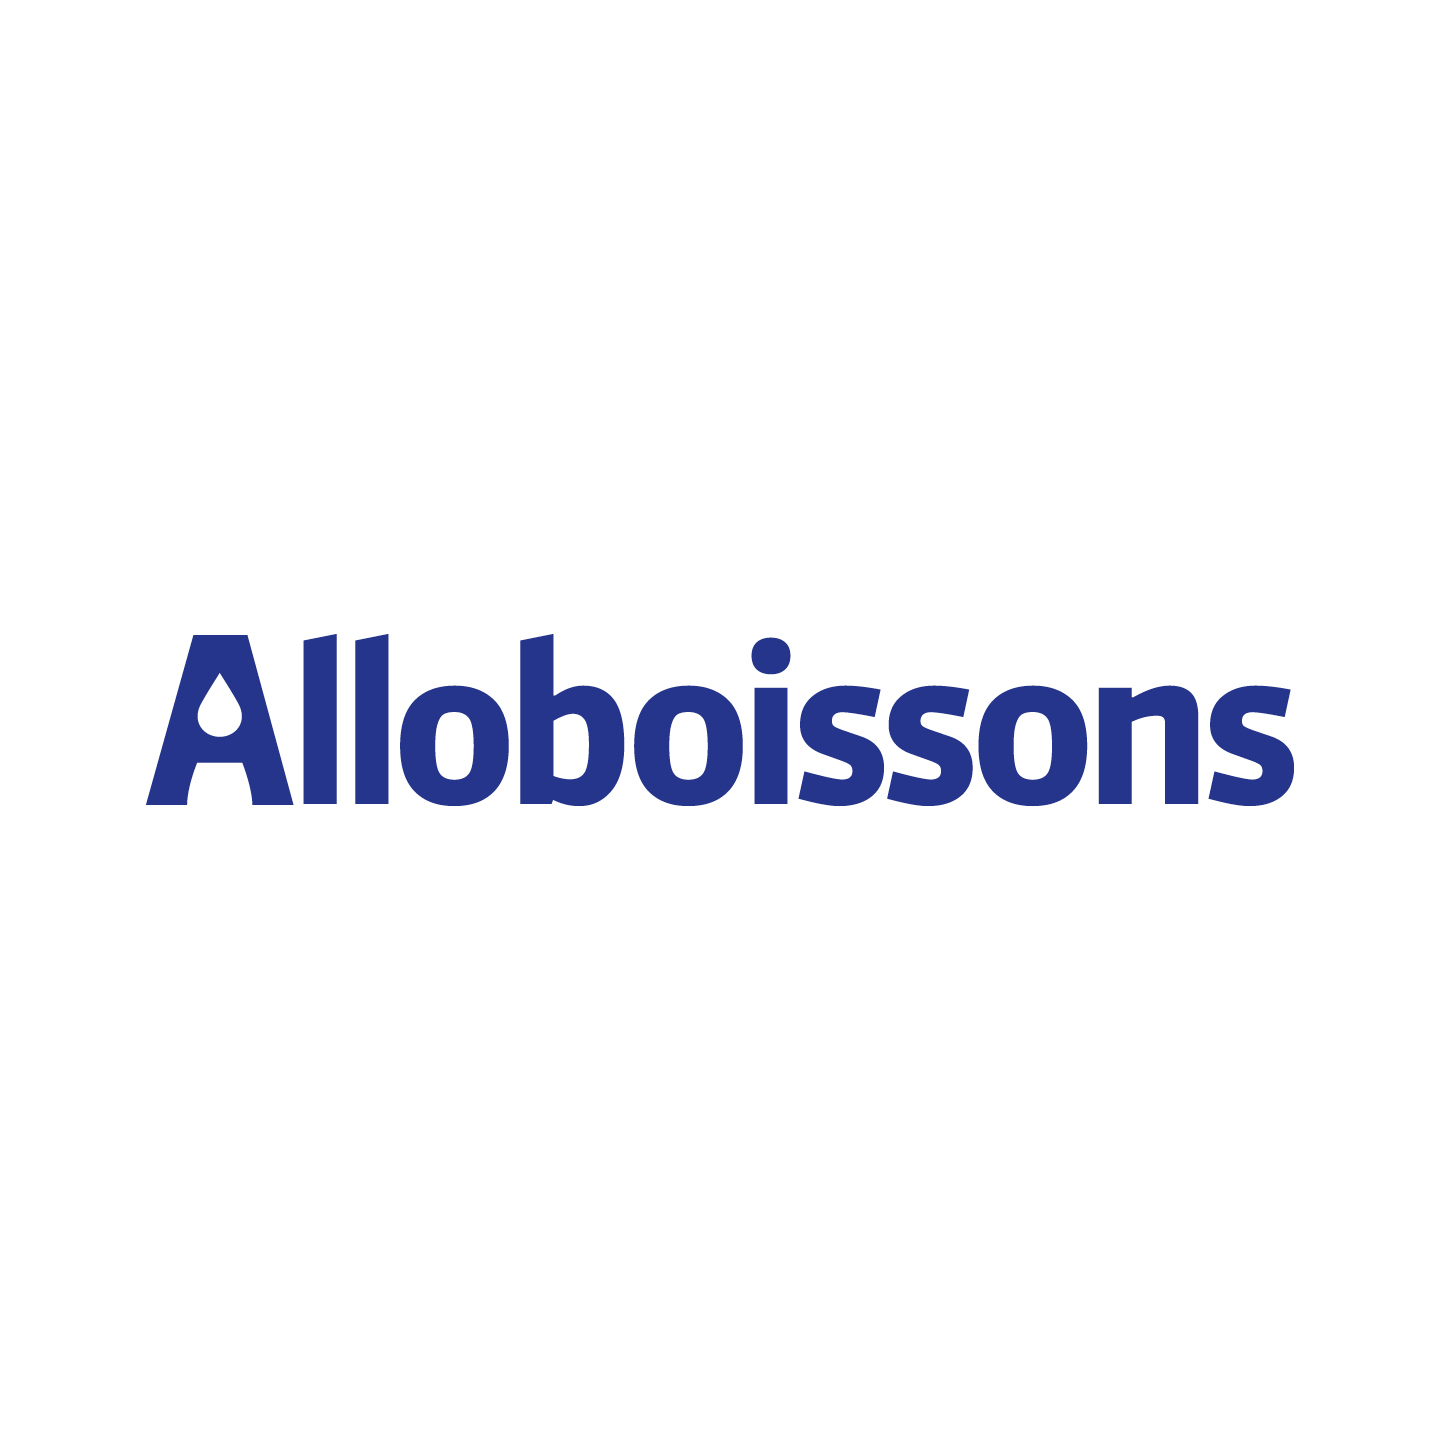 Alloboissons logo